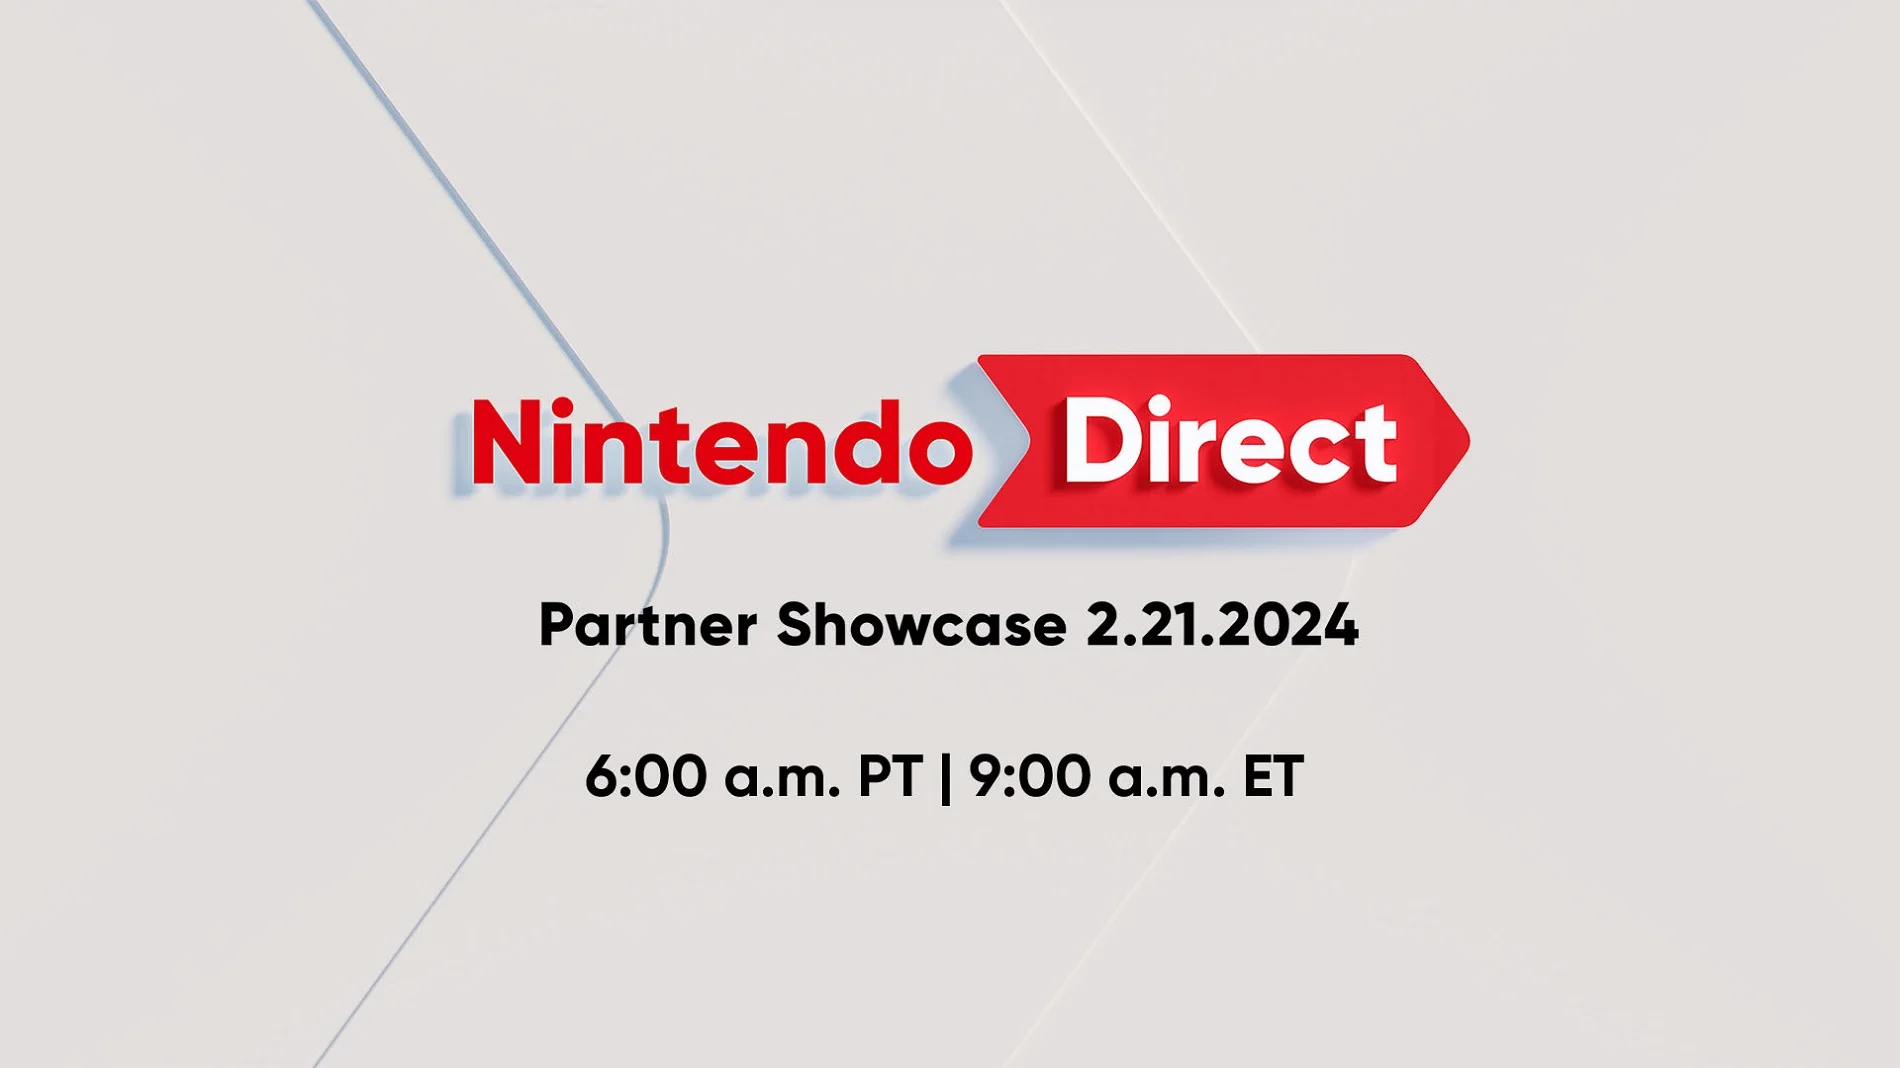 Nintendo анонсировала очередную презентацию Direct Partner с играми для Switch - фото 1